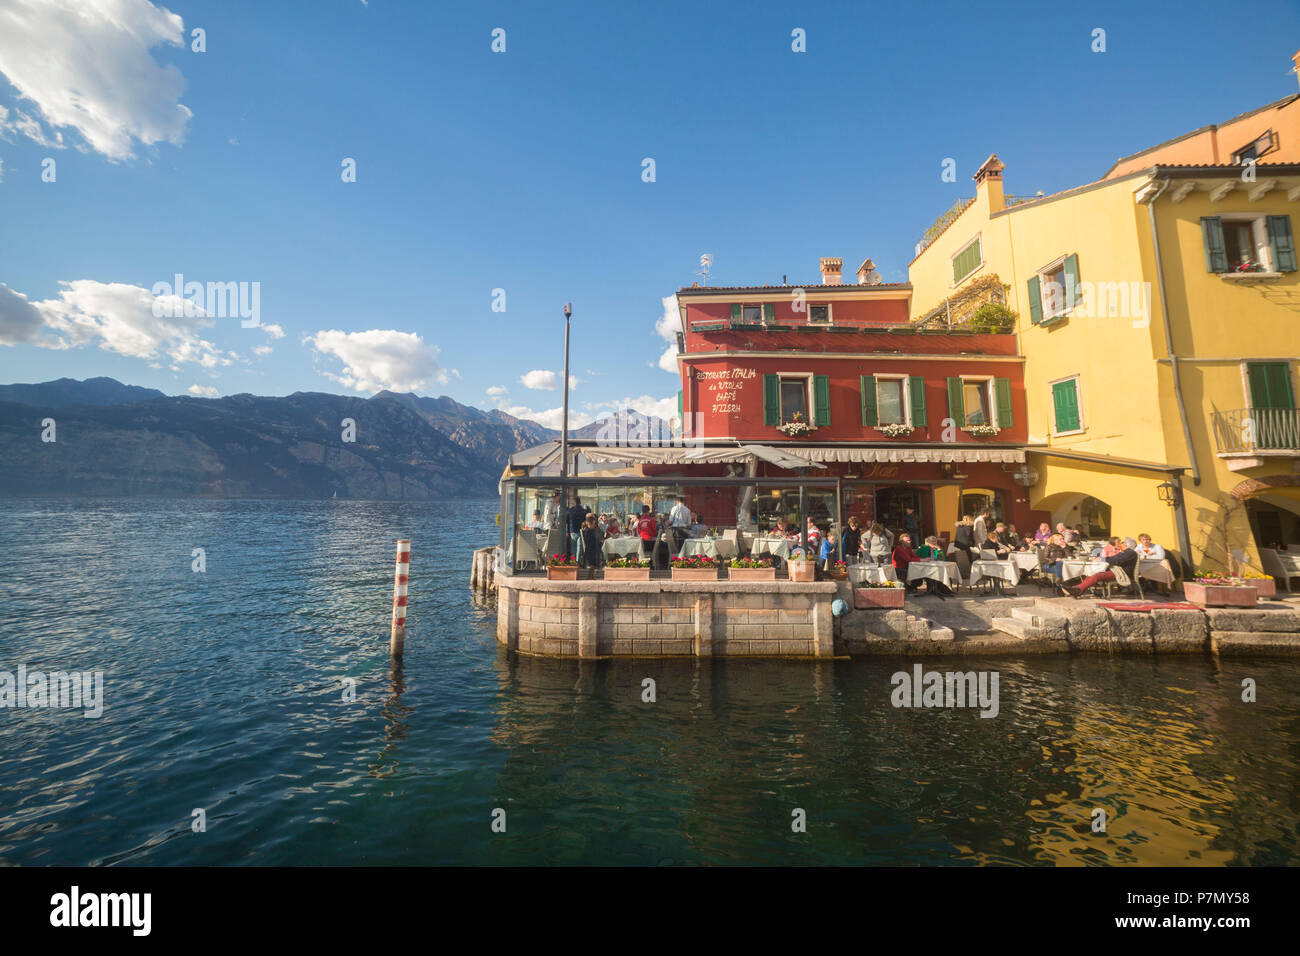 Un piccolo ristorante sul lago di Malcesine sulla sponda orientale del Lago di Garda, provincia di Verona, regione Veneto, Italia. Foto Stock